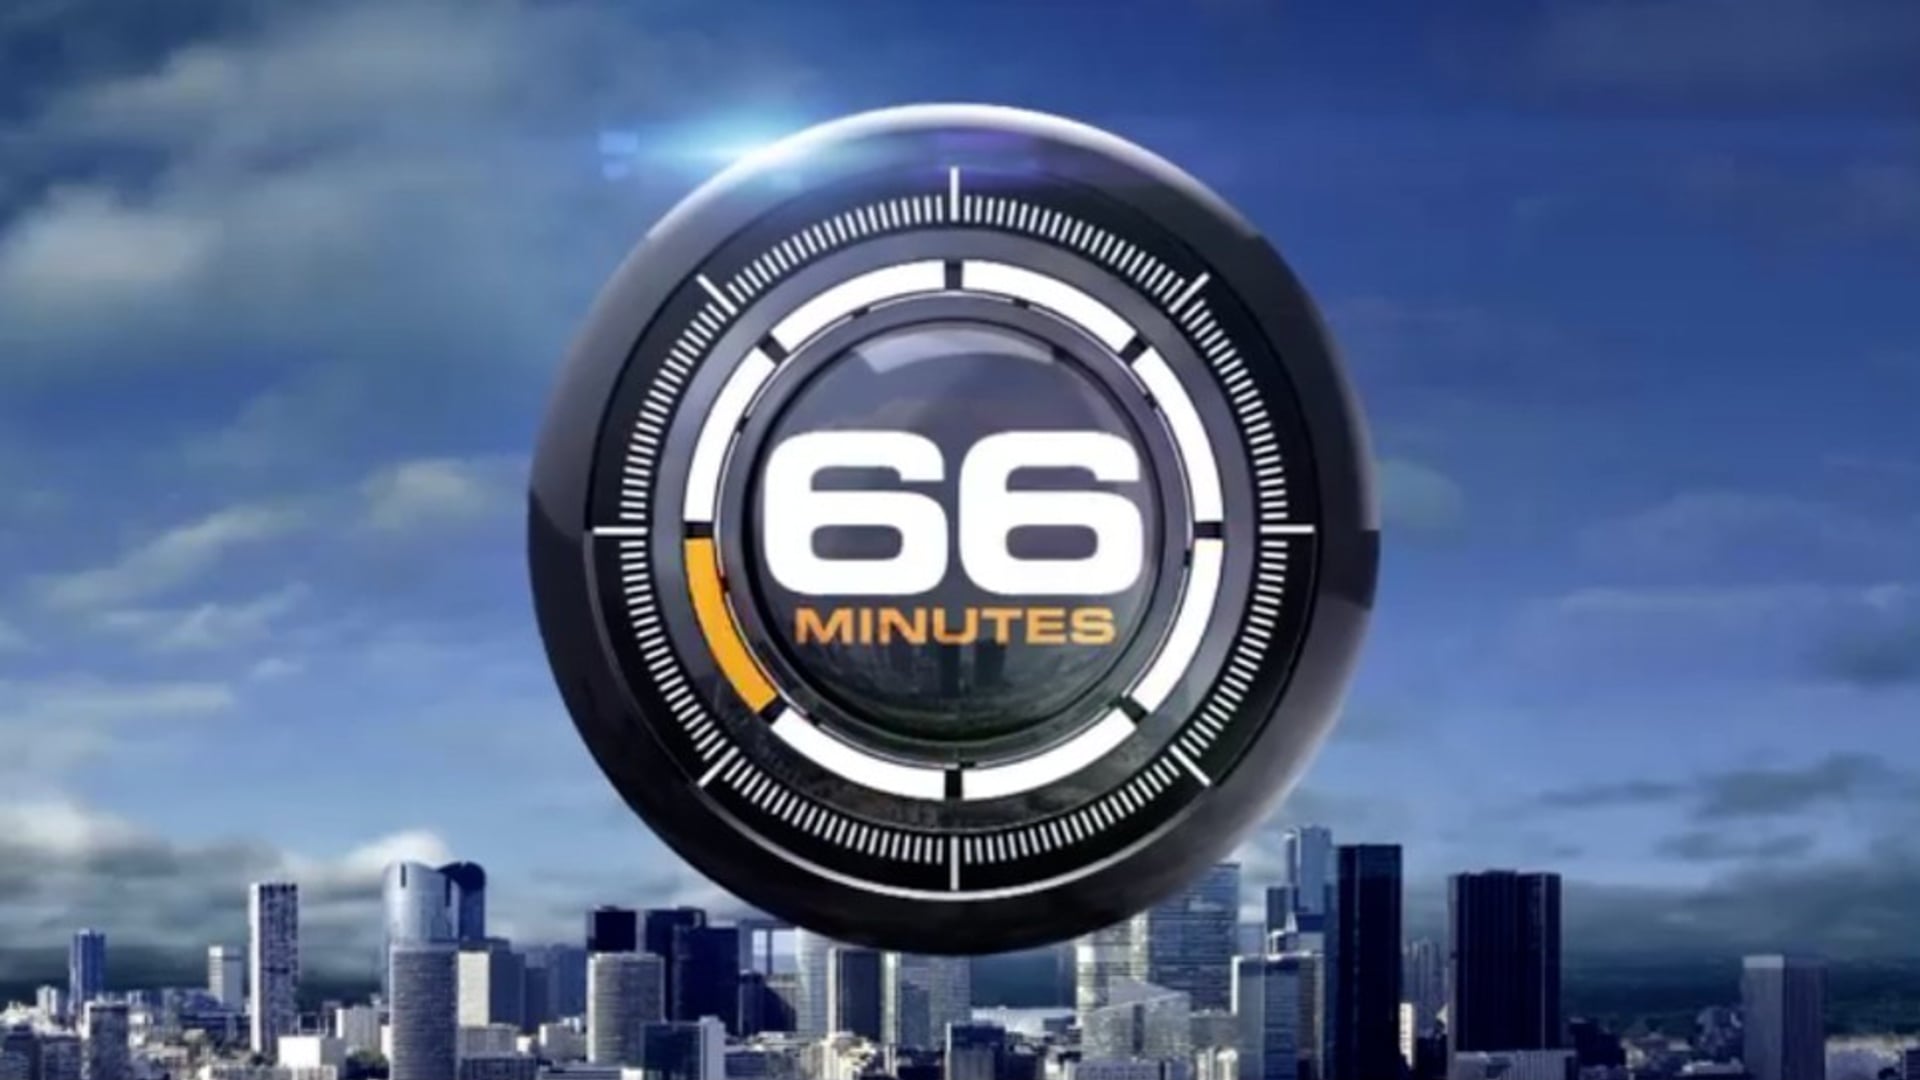 66 Minutes • La madeleine : le nouveau macaron (M6 / Capa)